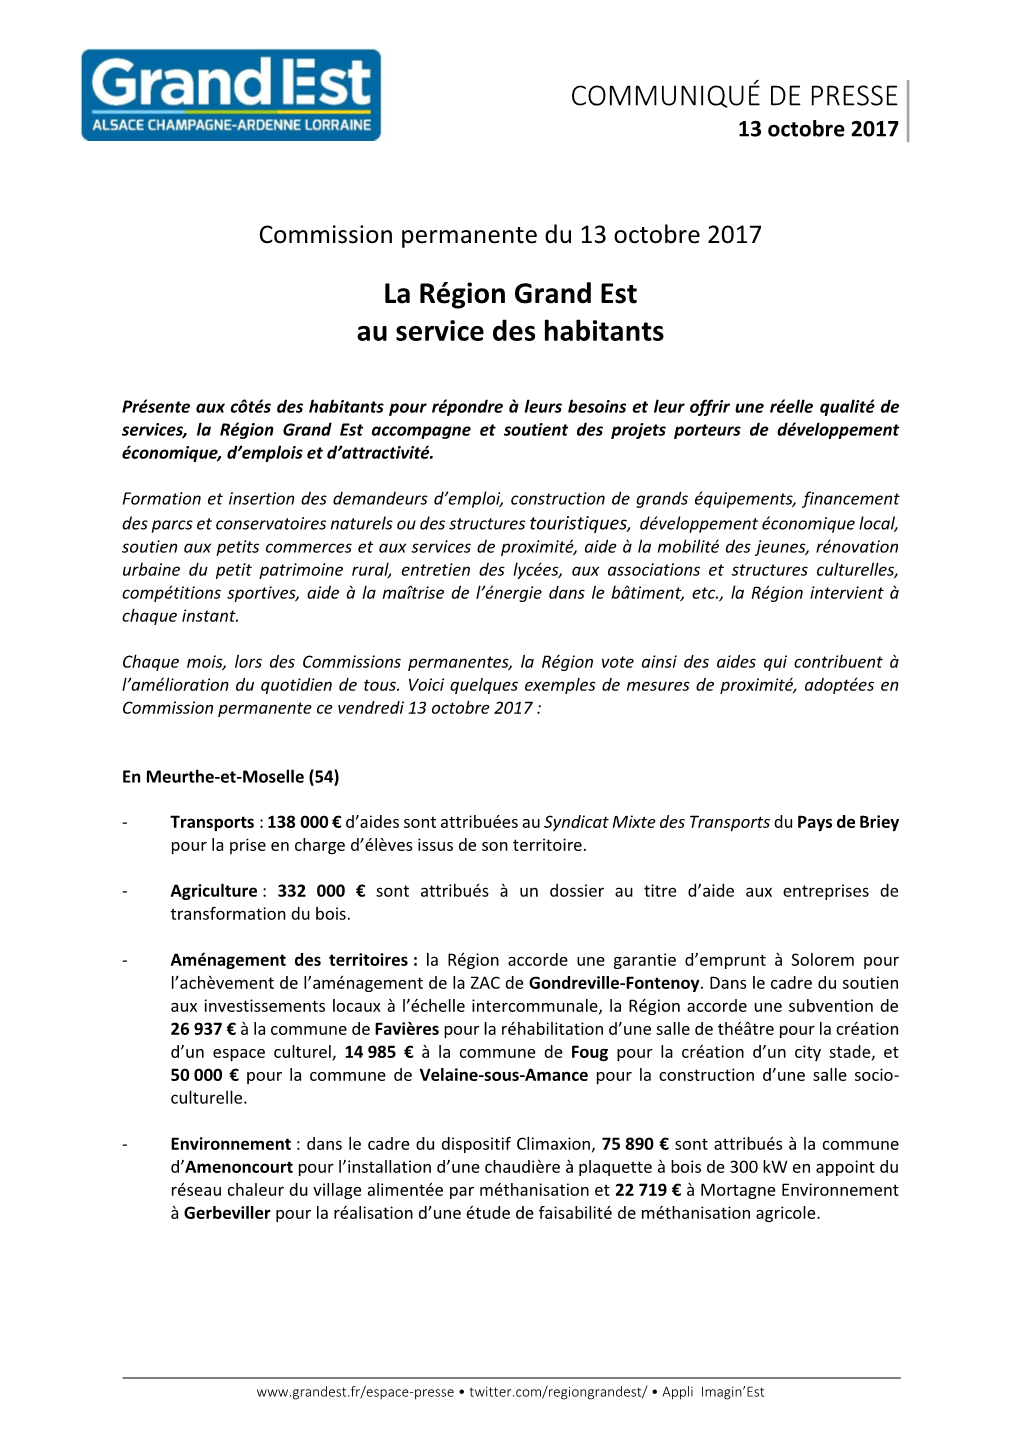 COMMUNIQUÉ DE PRESSE La Région Grand Est Au Service Des